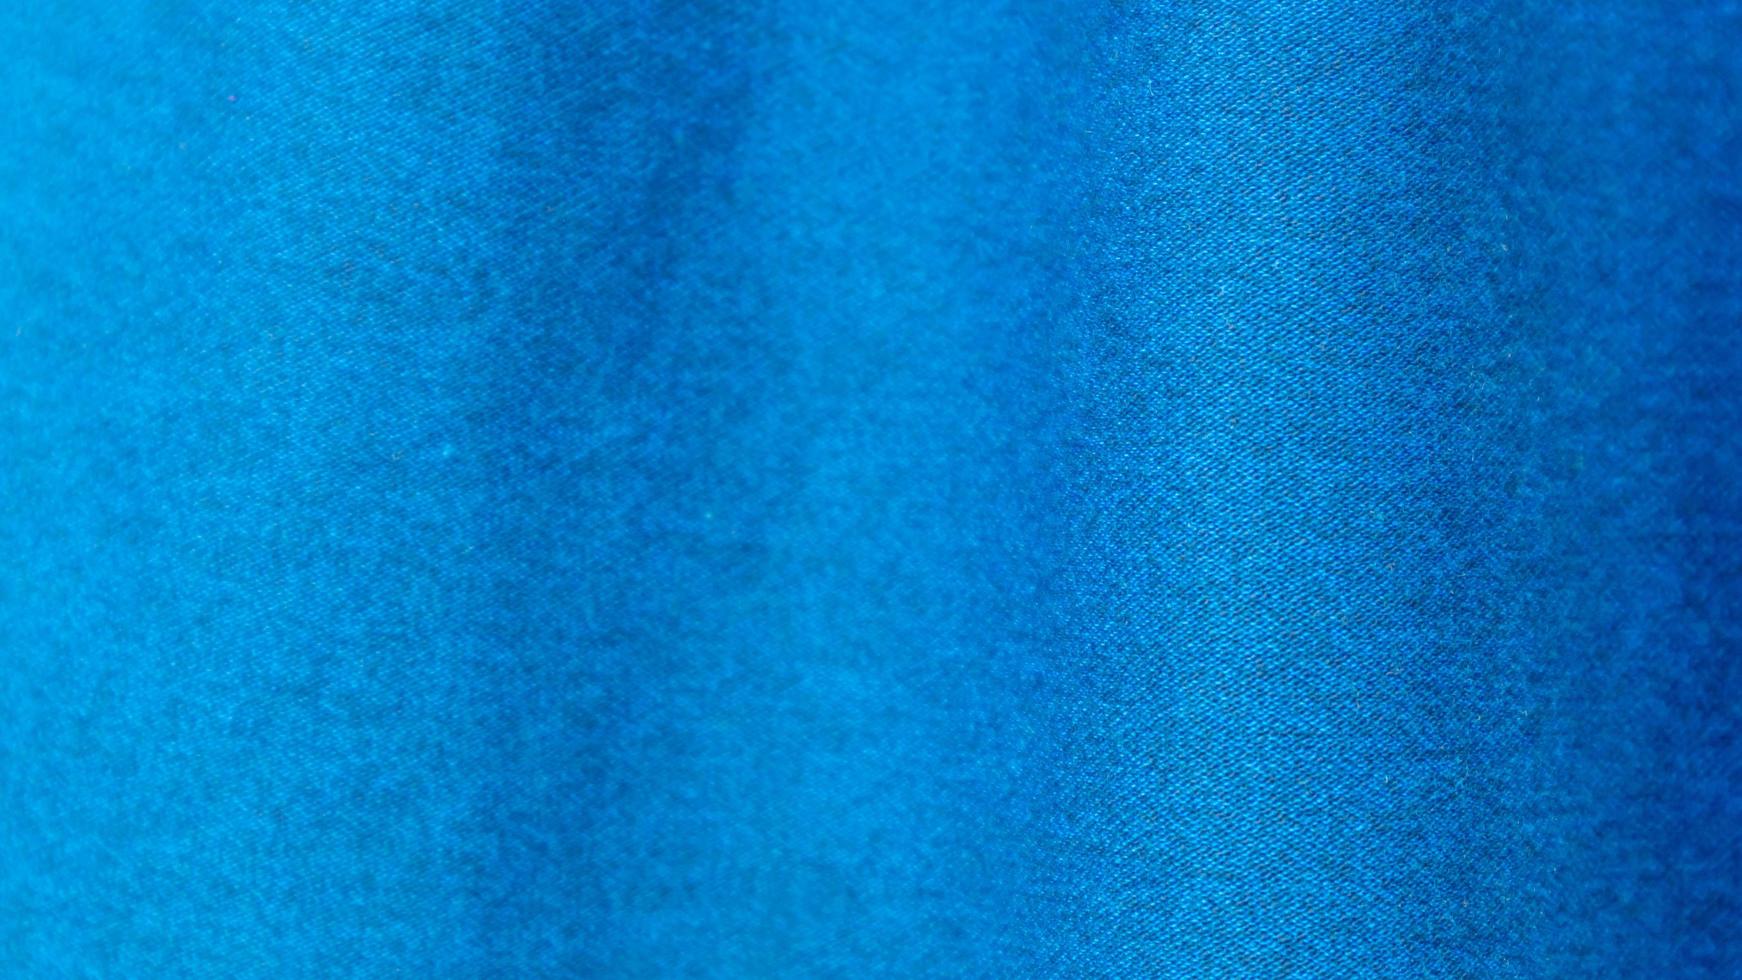 texture de tissu bleu en arrière-plan photo